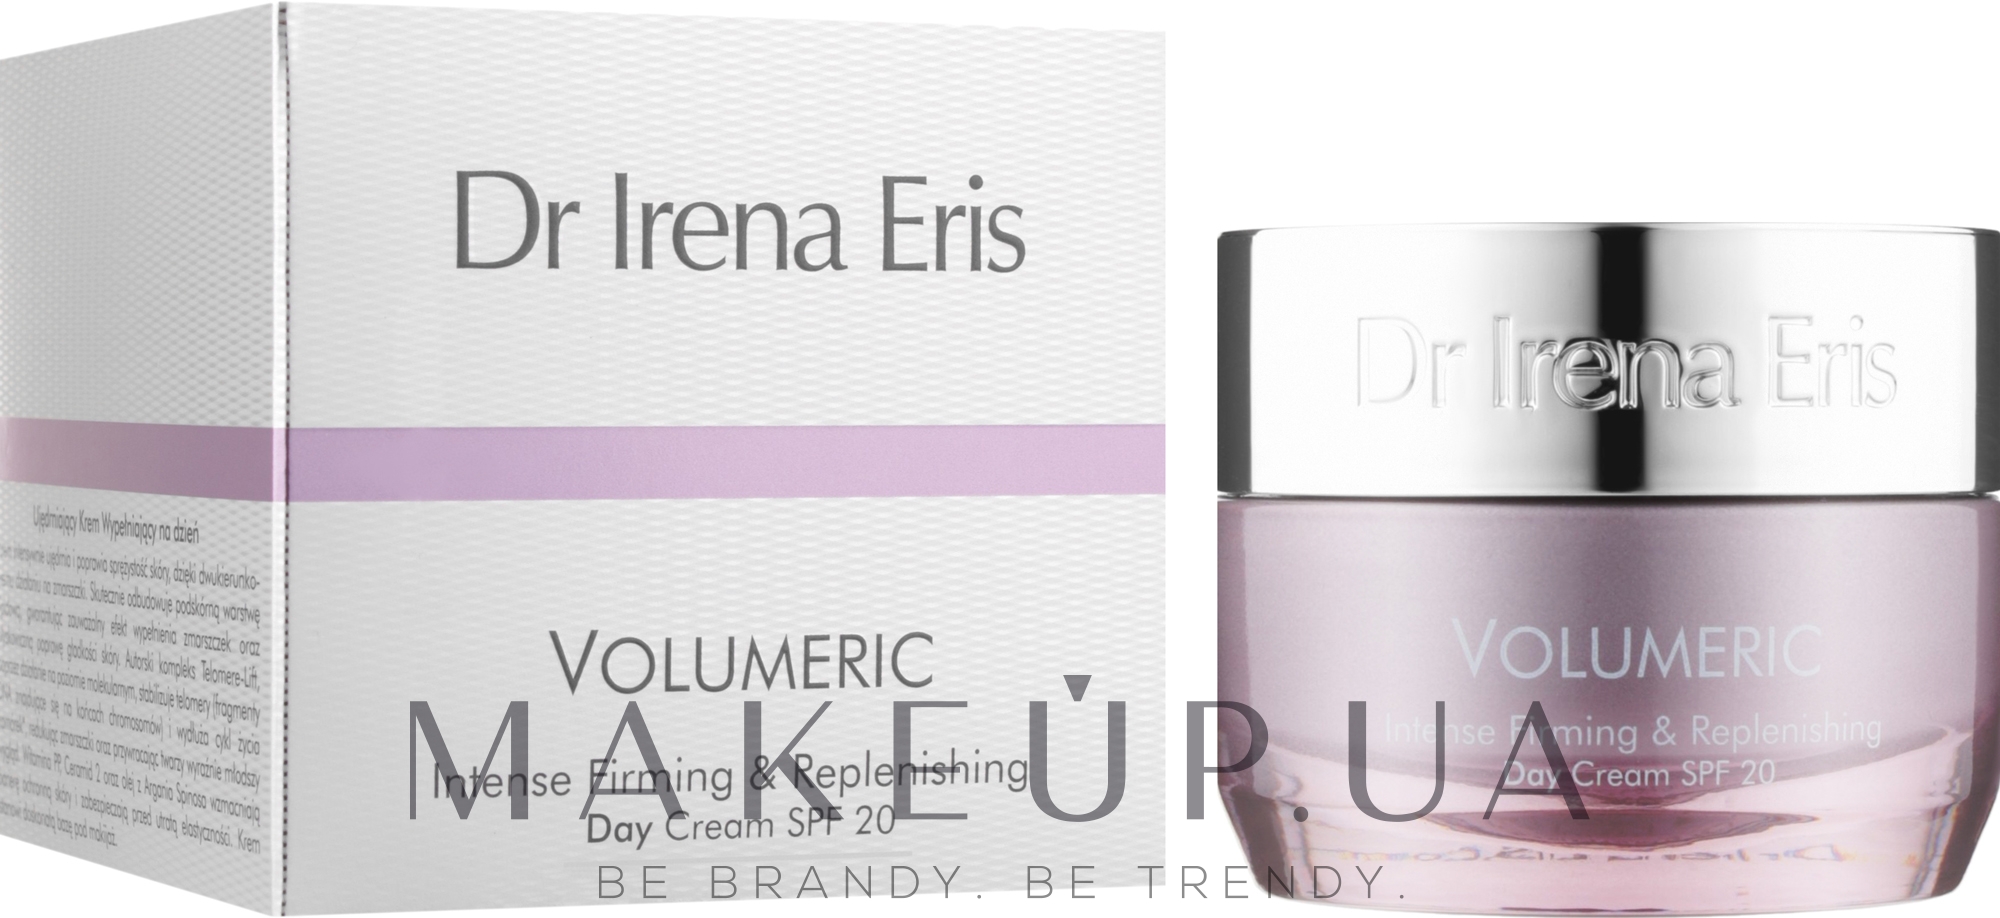 Інтенсивний відновлювальний денний крем - Dr. Irena Eris Volumeric Intense Firming & Replenishing Day Cream SPF 20 — фото 50ml